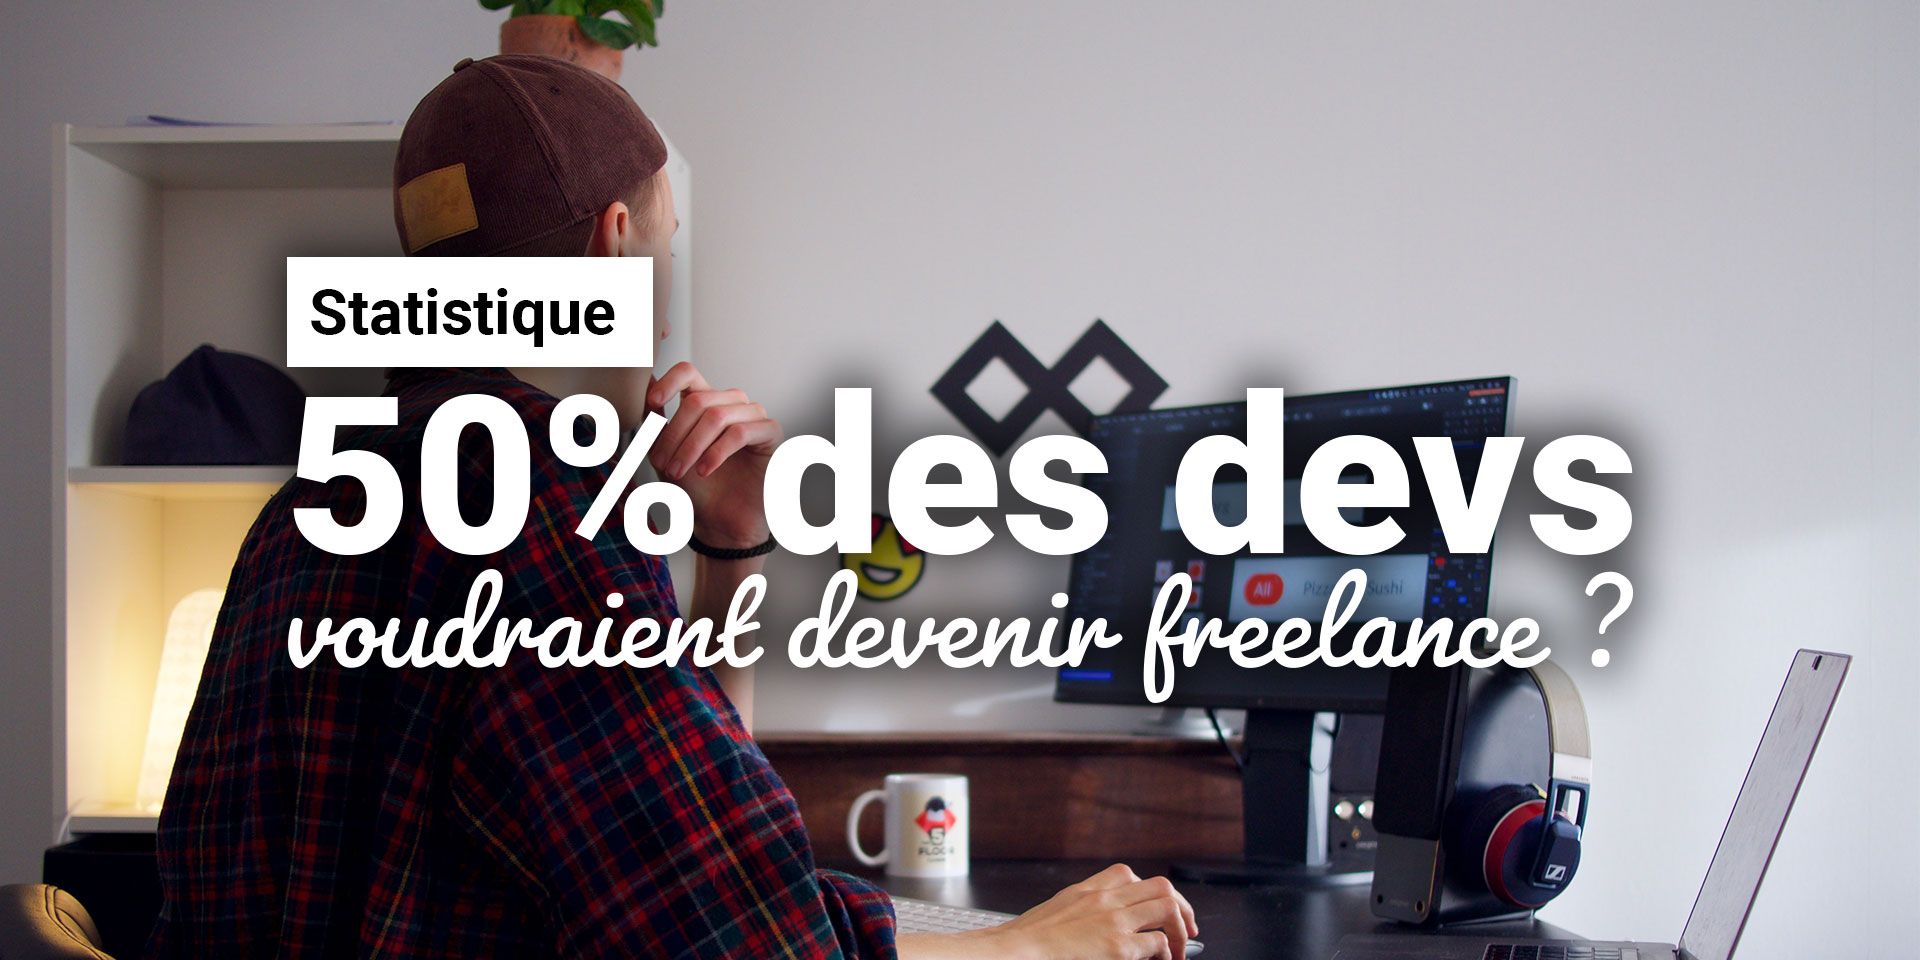 50% des développeurs et développeuses veulent devenir freelance